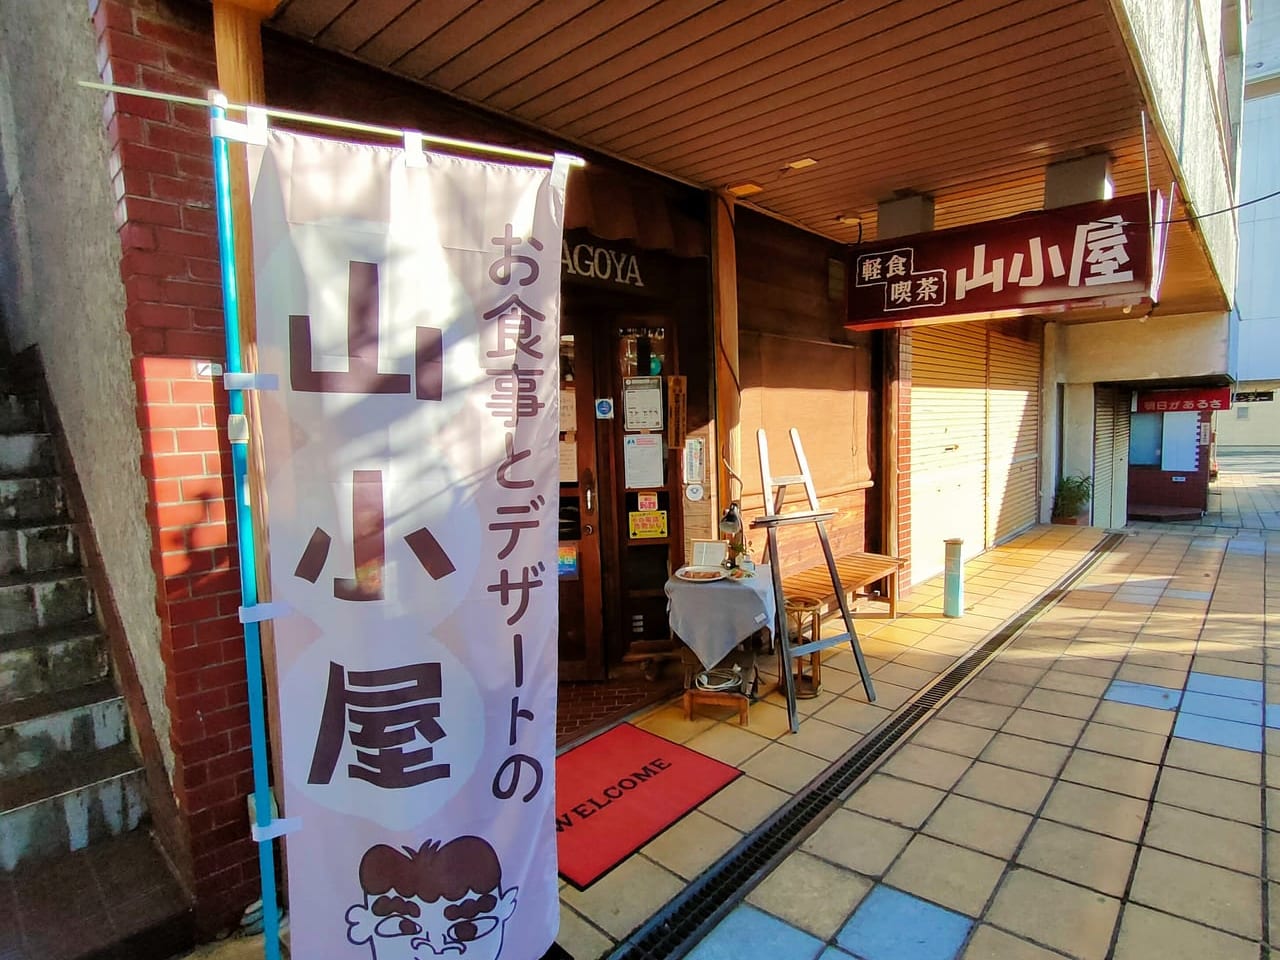 「軽食喫茶 山小屋」で「孤独のグルメ」の井之頭五郎さんが悩んだオリジナルパフェをいただいてきました！